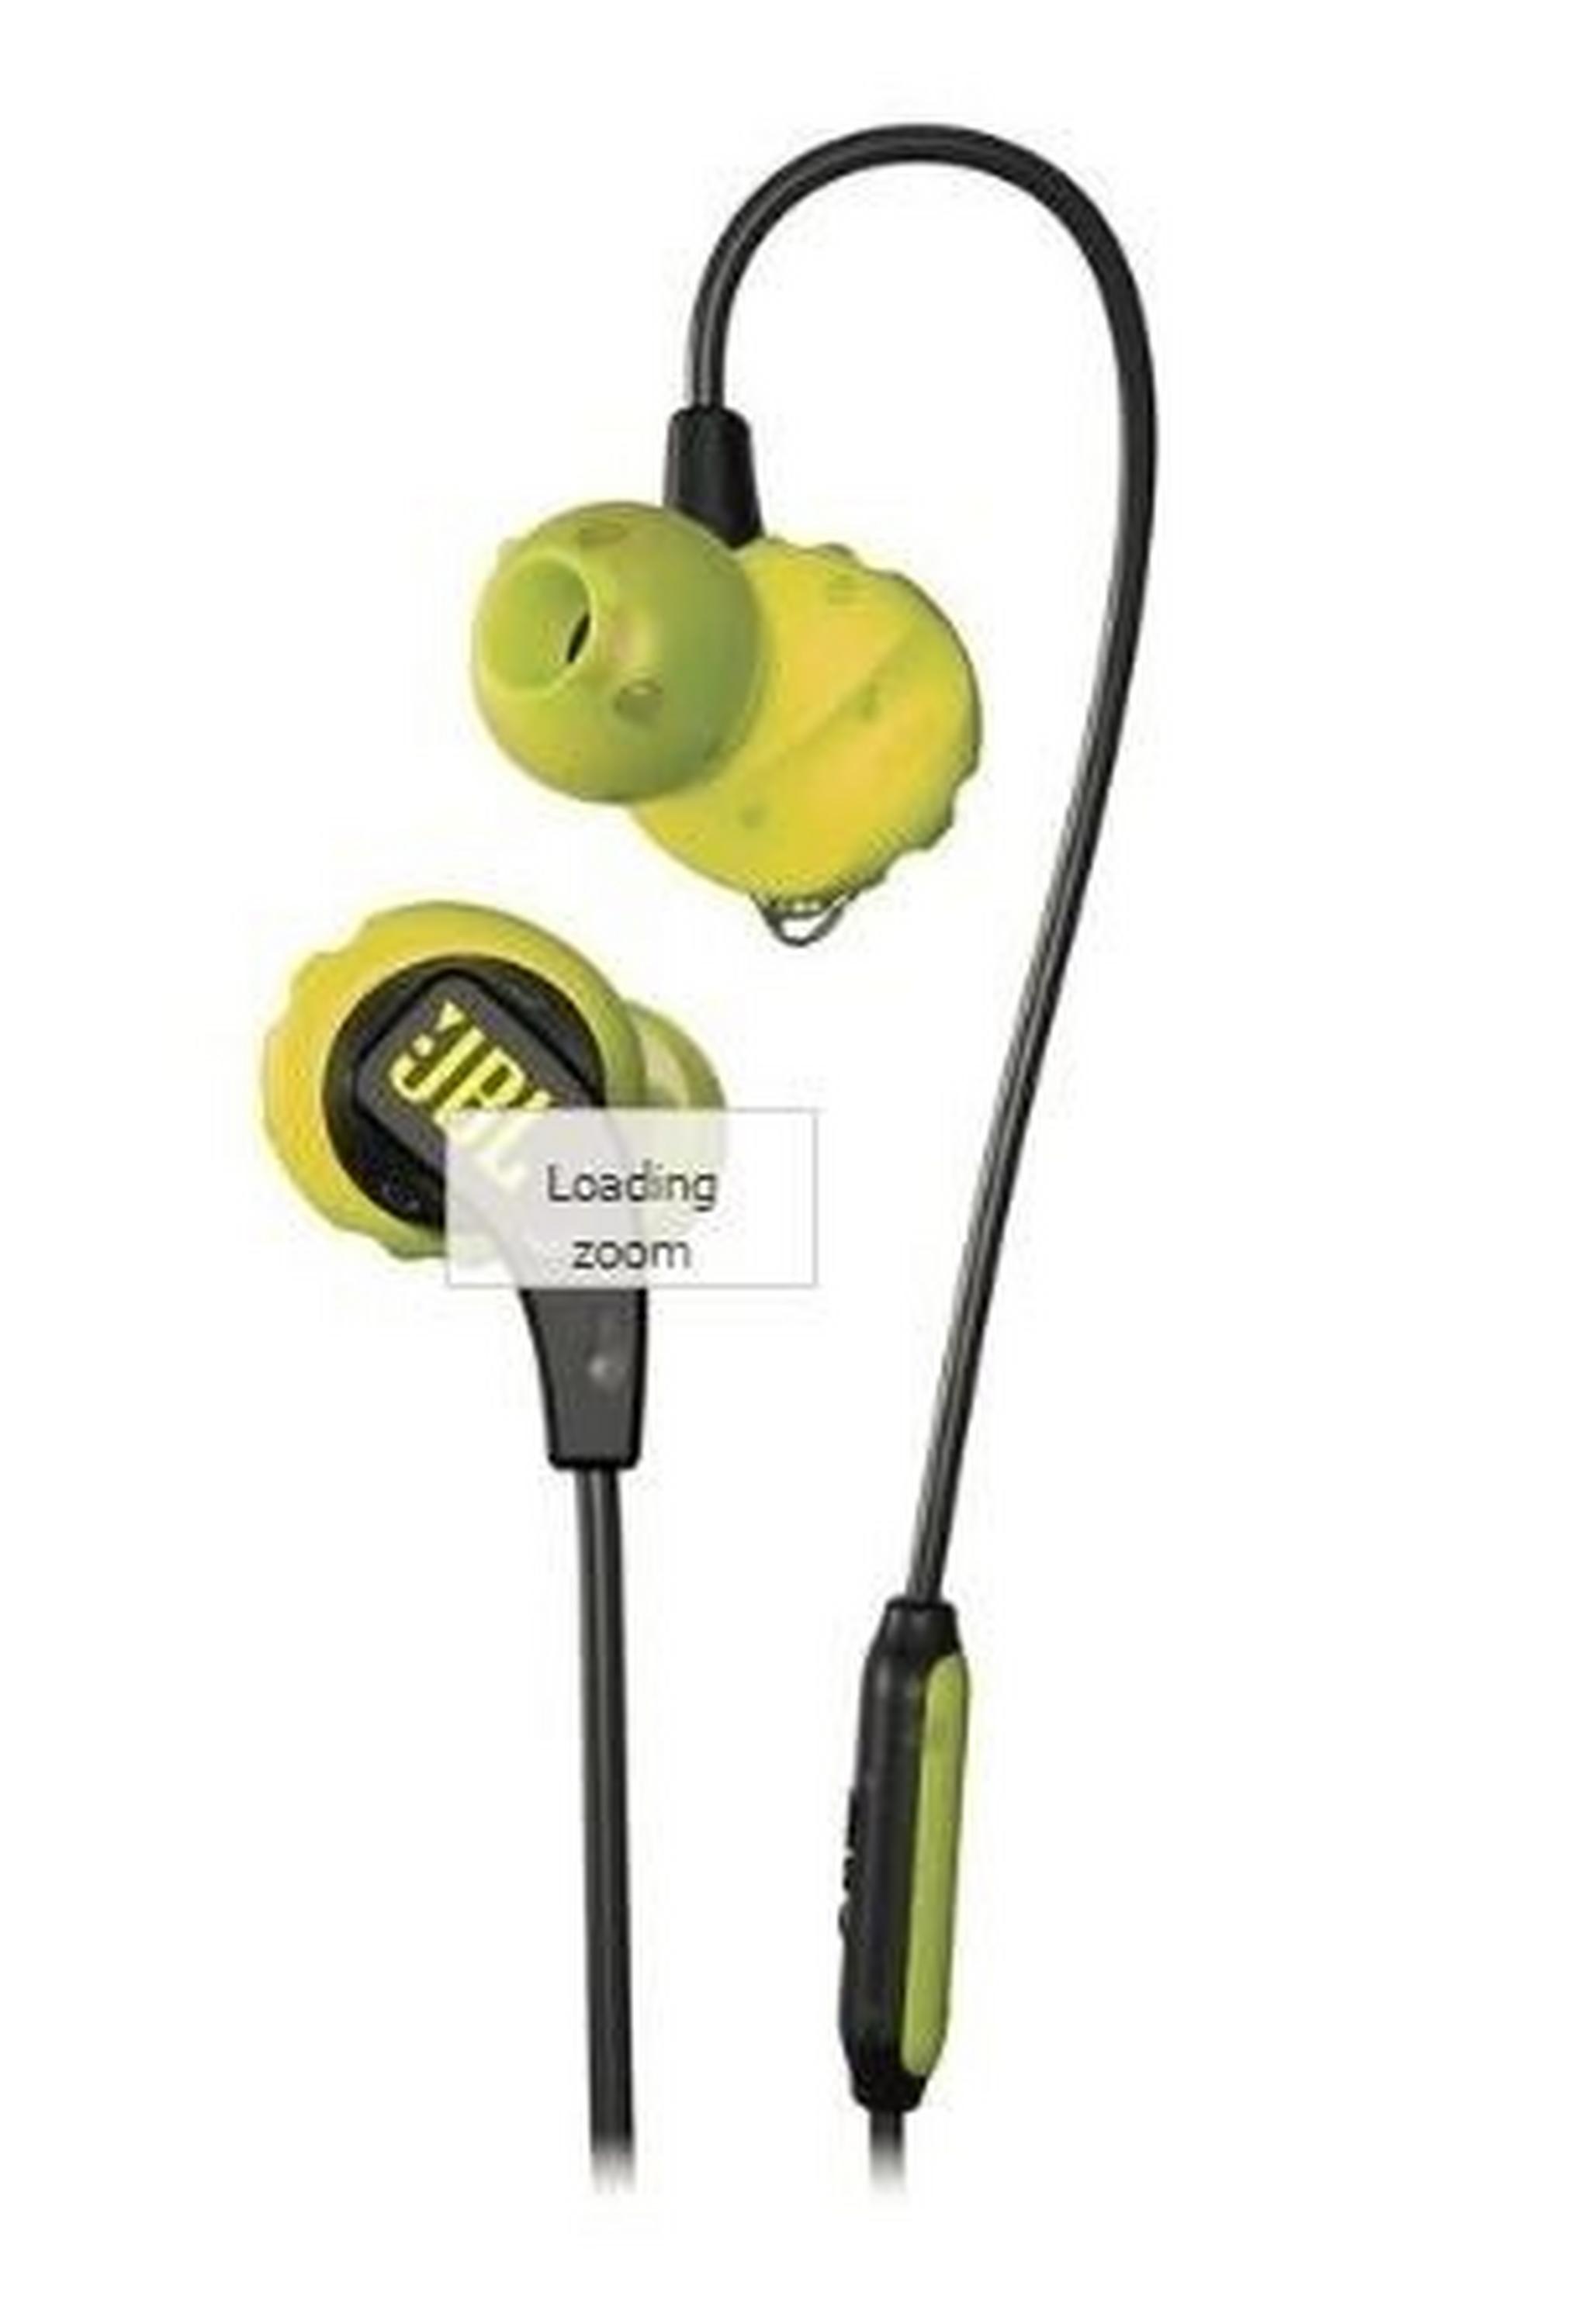 JBL Enure Run In Ear Wired Sweatproof Earphone - Yellow